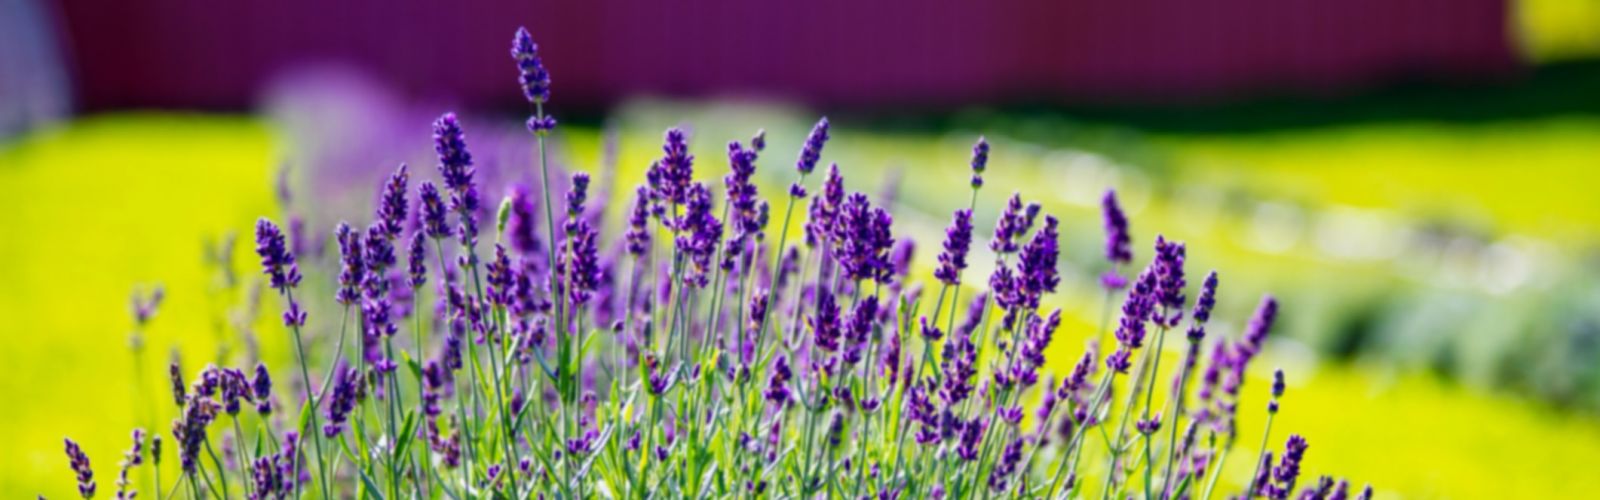 lavender growing